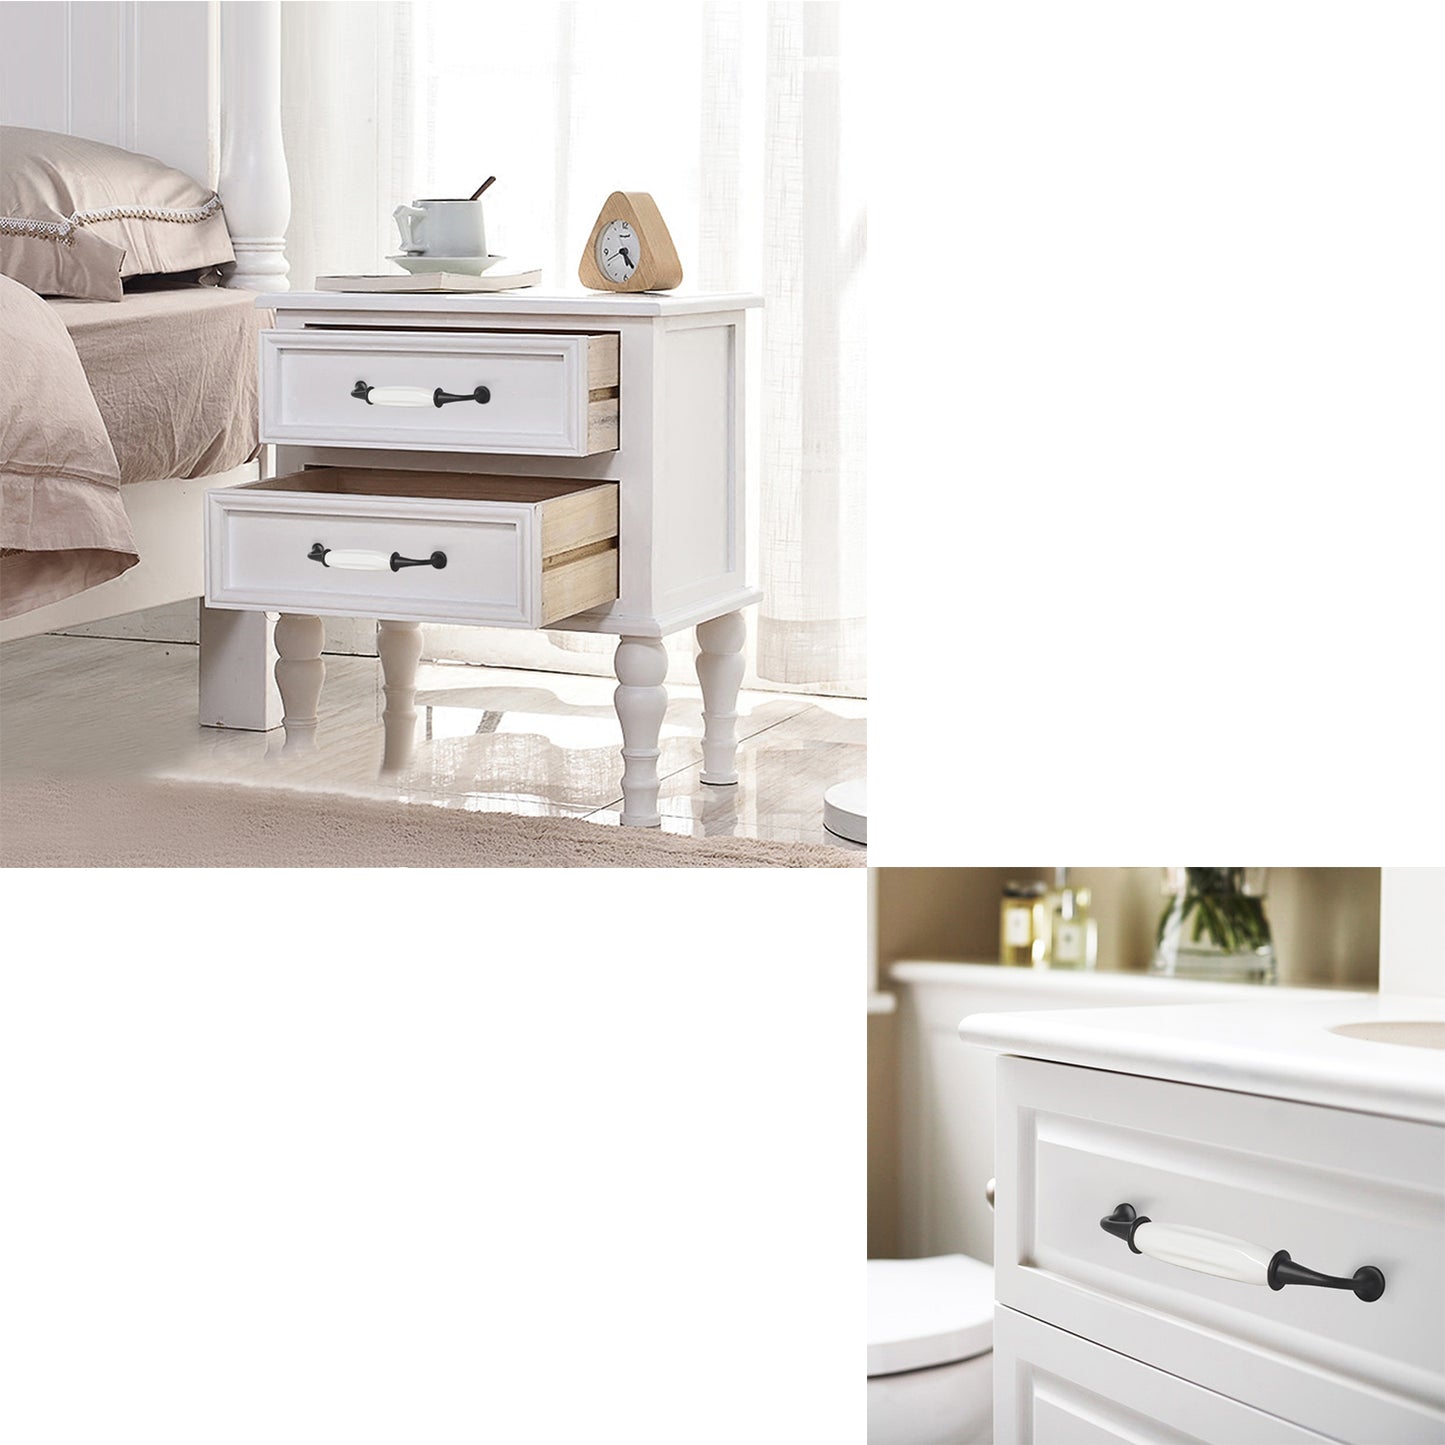 Black White Porcelain Dresser Drawer Pulls, Ceramic Zinc Alloy Kitchen Cabinet Handles - Hole Spacing for 3-3/4", 5'' - PD692BK